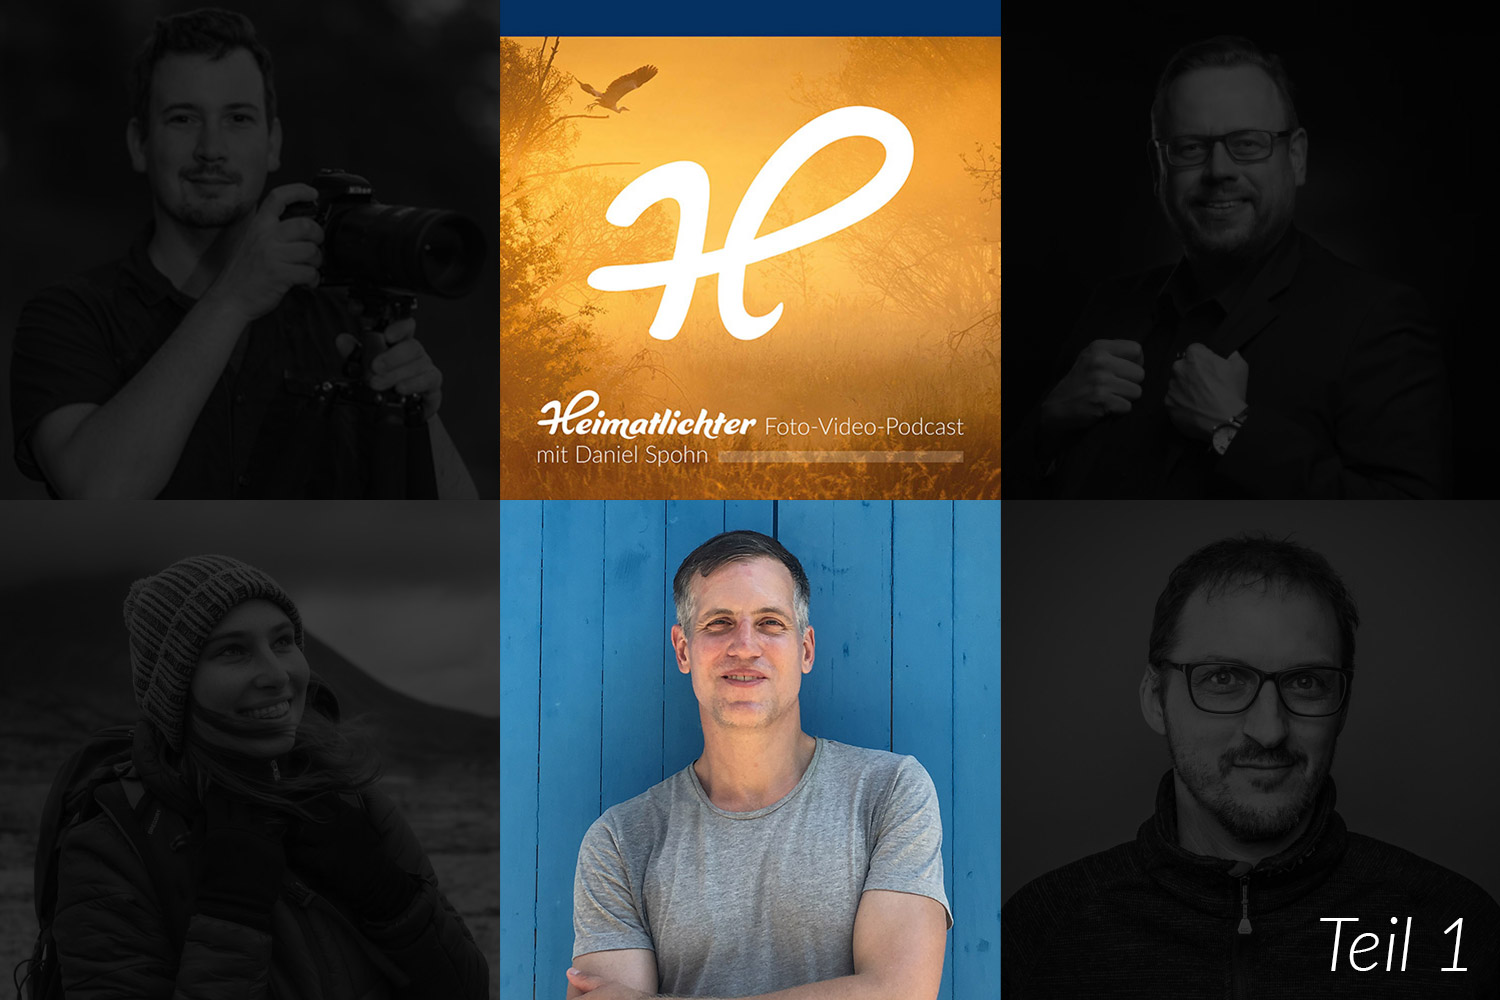 Heimatlichter Foto-Video-Podcast mit Daniel Spohn, Episode 3 mit Kai Behrmann - Journalist, Fotograf, Podcaster, Fototrainer - Thema: Bildaussage und Kreativität in der Reportagefotografie